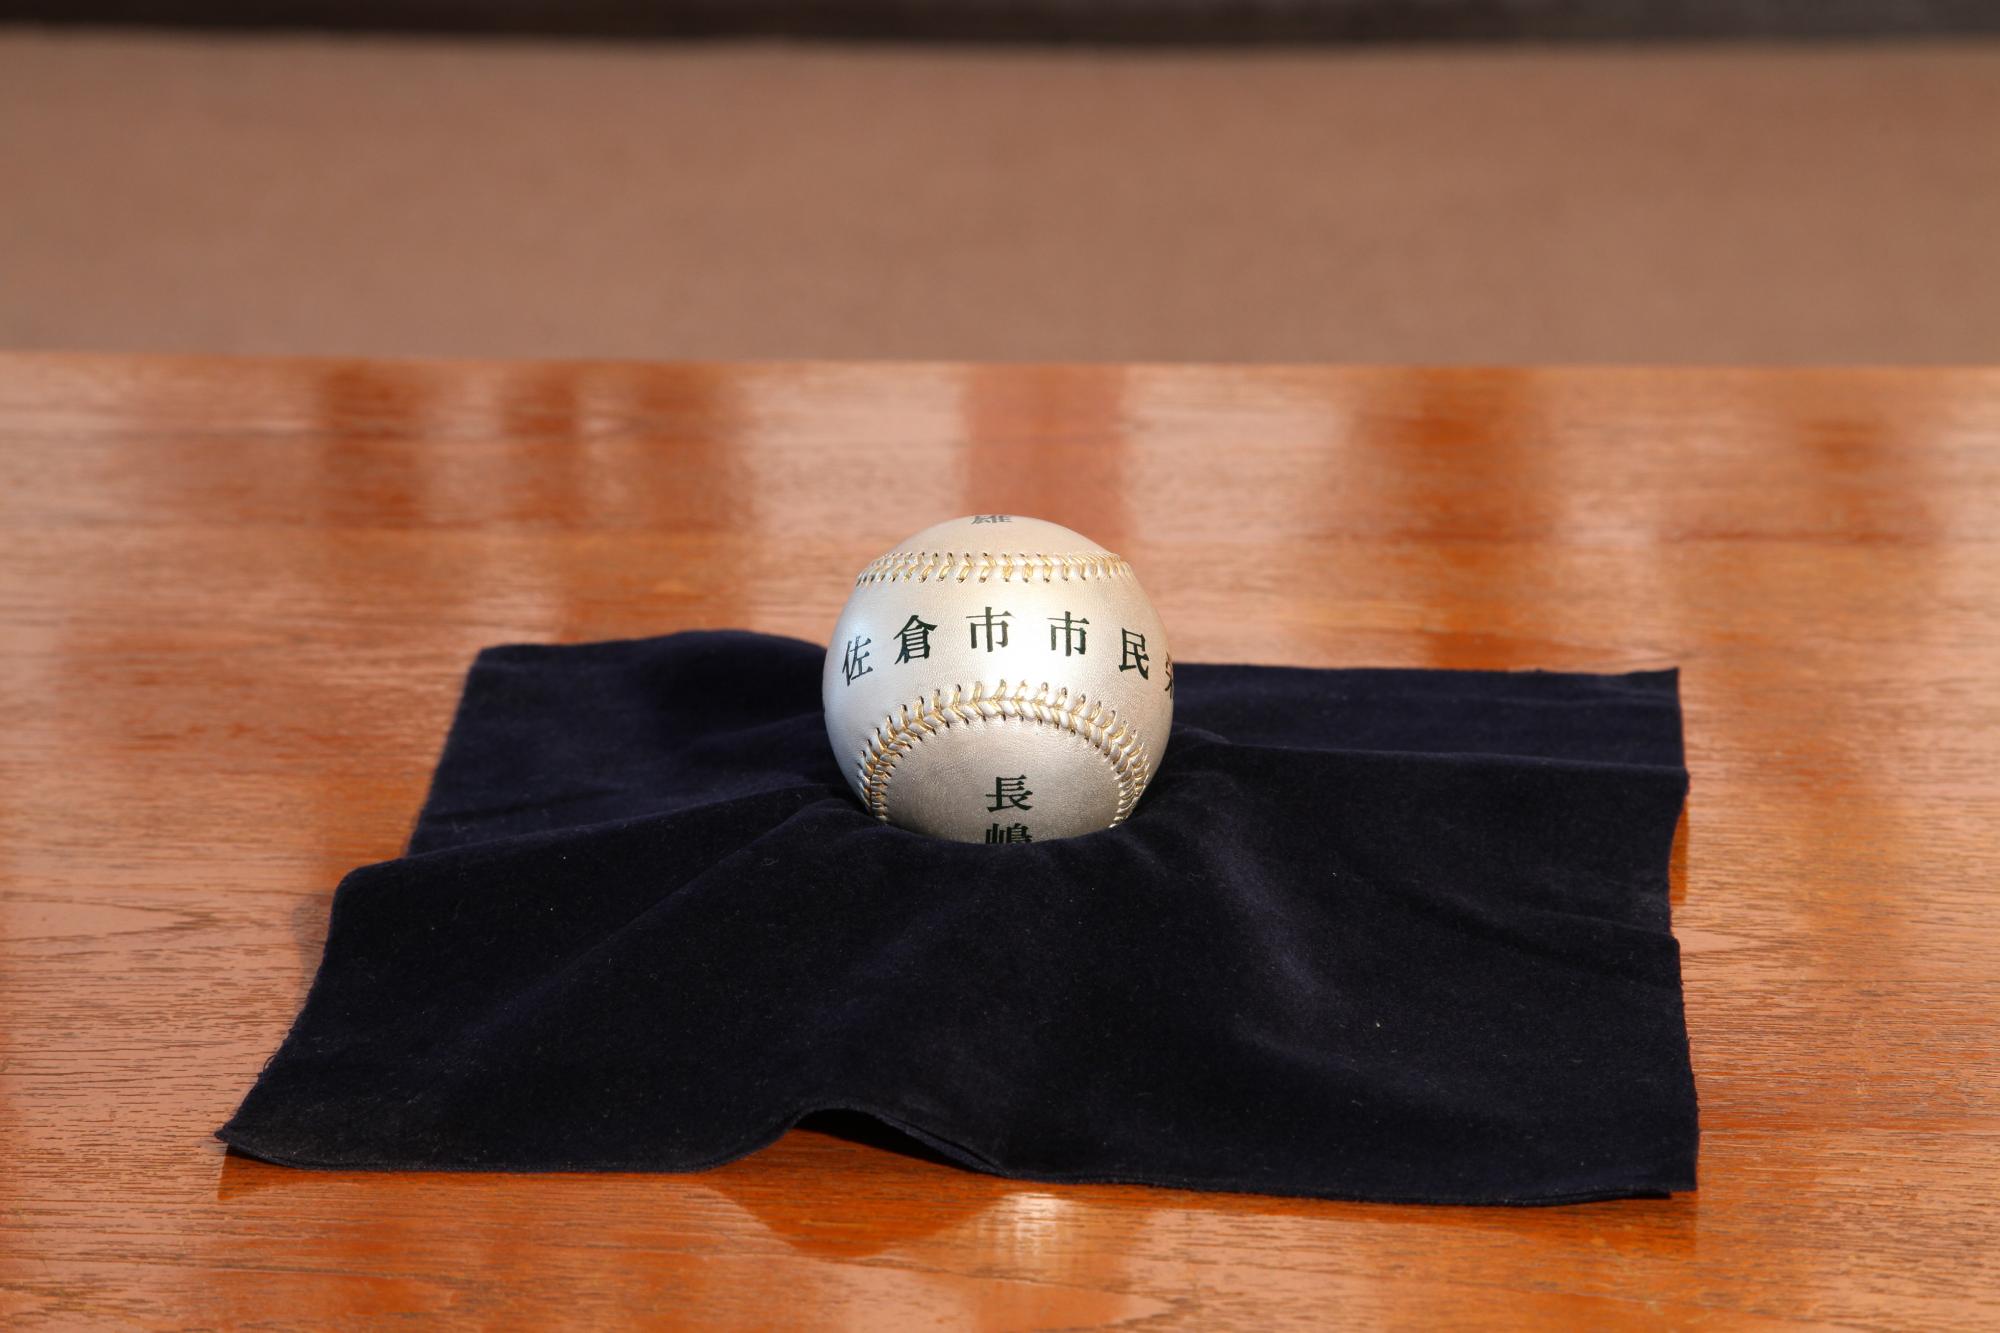 佐倉市市民賞と書かれた銀色のボールが、黒い布の上に置かれている写真